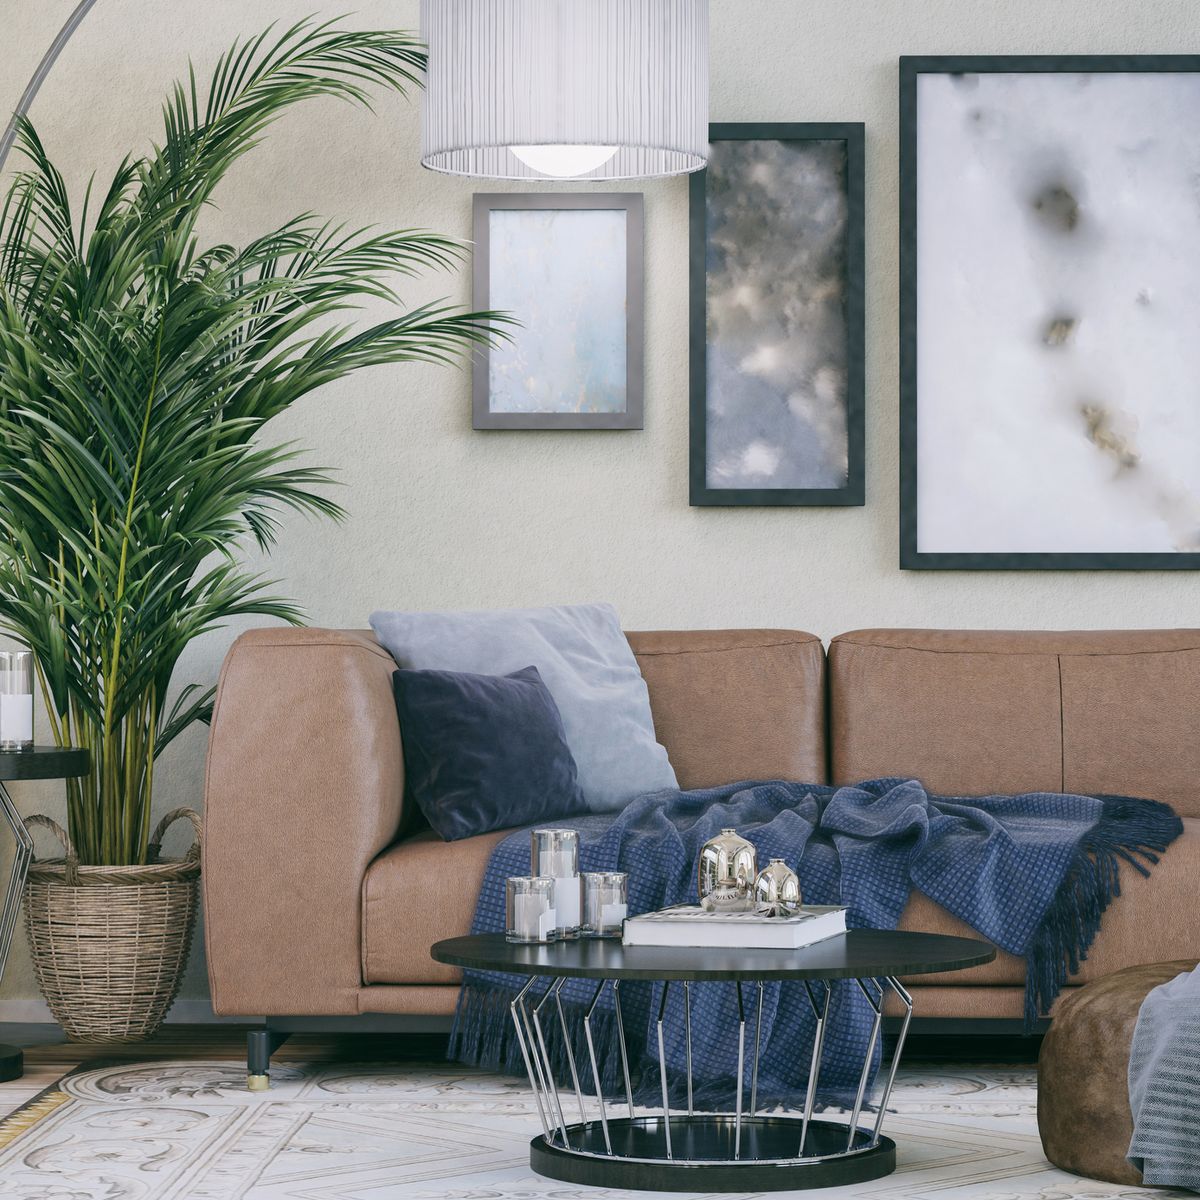 15 Best Living Room Plants - Living Room Indoor Plants to Buy Now